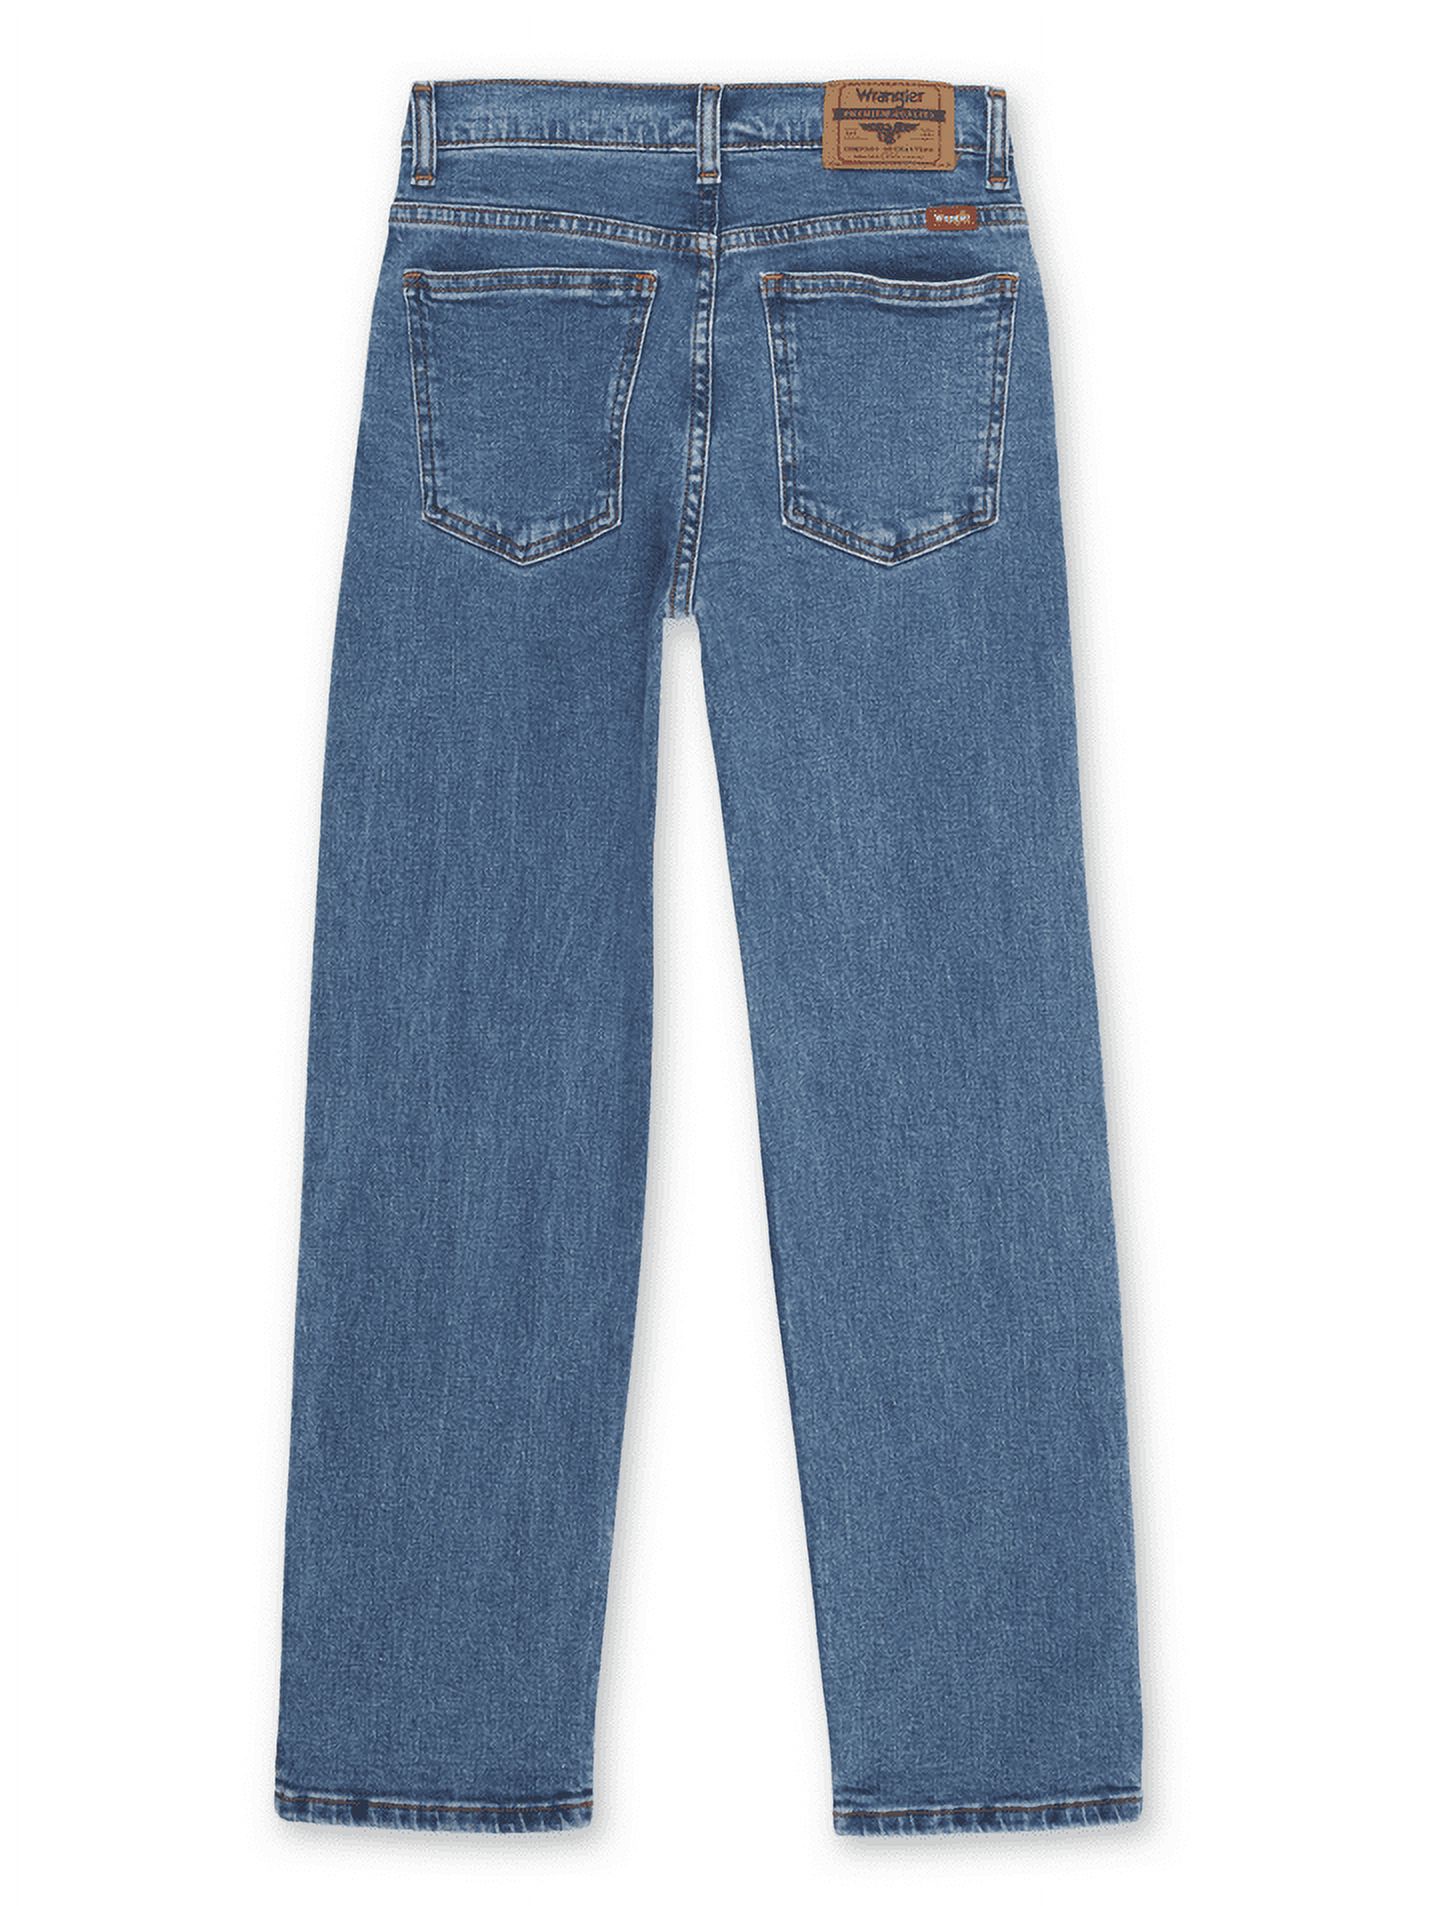 Wrangler Boys Straight Fit Denim Jeans, Sizes 4-18 Regular, Slim, & Husky - image 5 of 6